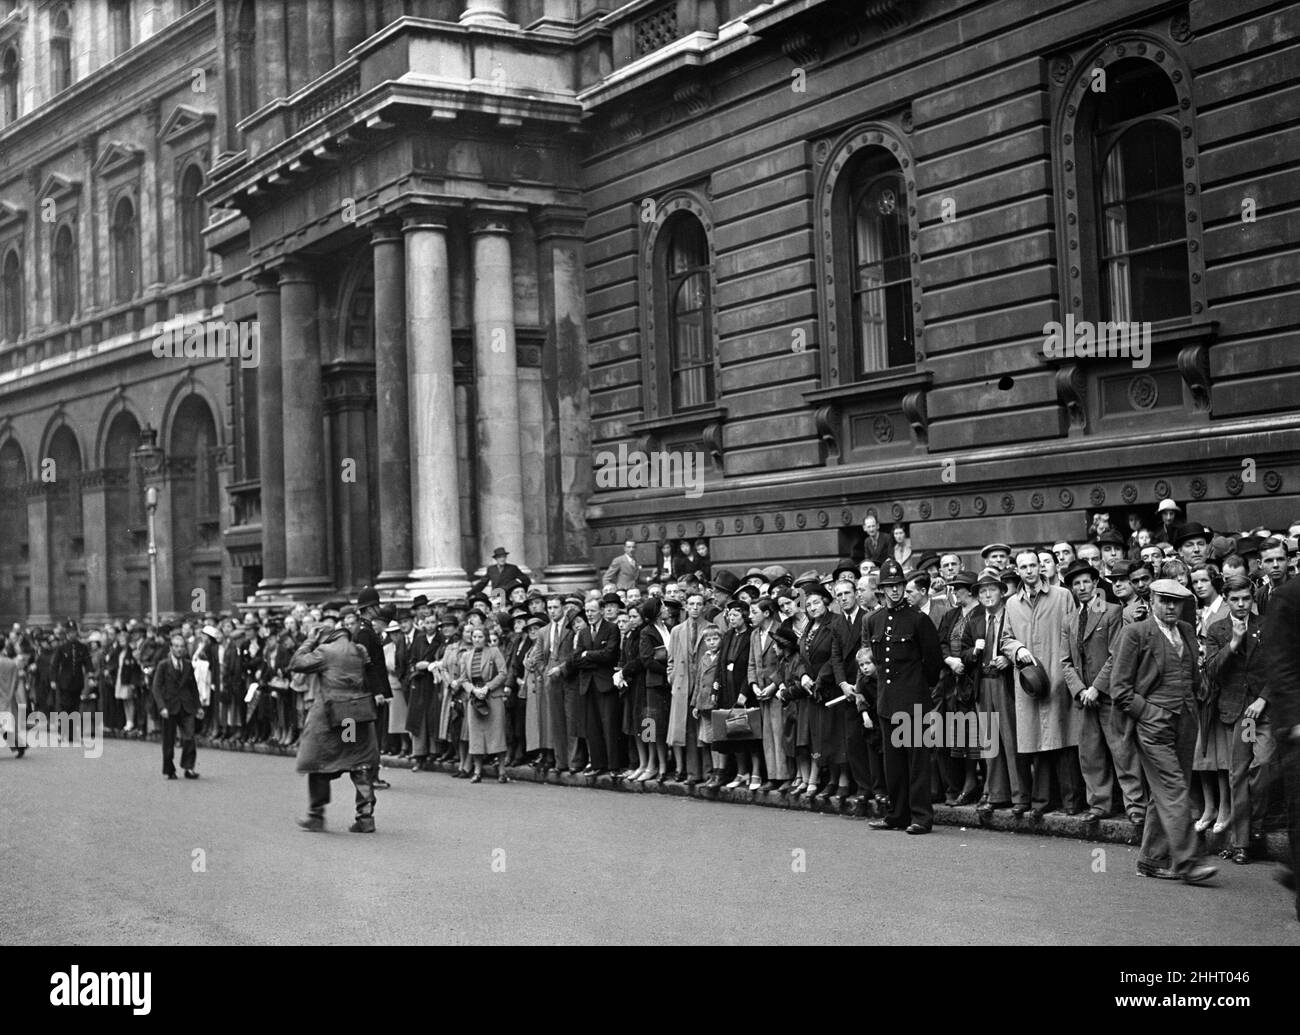 Deuxième Guerre mondiale, Grande-Bretagne, 1st septembre 1939, rassemblement de foules pour observer les ministres du Cabinet et les diplomates arrivant au 10 Downing Street Londres après avoir entendu les nouvelles que l'Allemagne nazie avait envahi la Pologne *** Légende locale *** Watscan - - 11/07/2009 - - - Banque D'Images